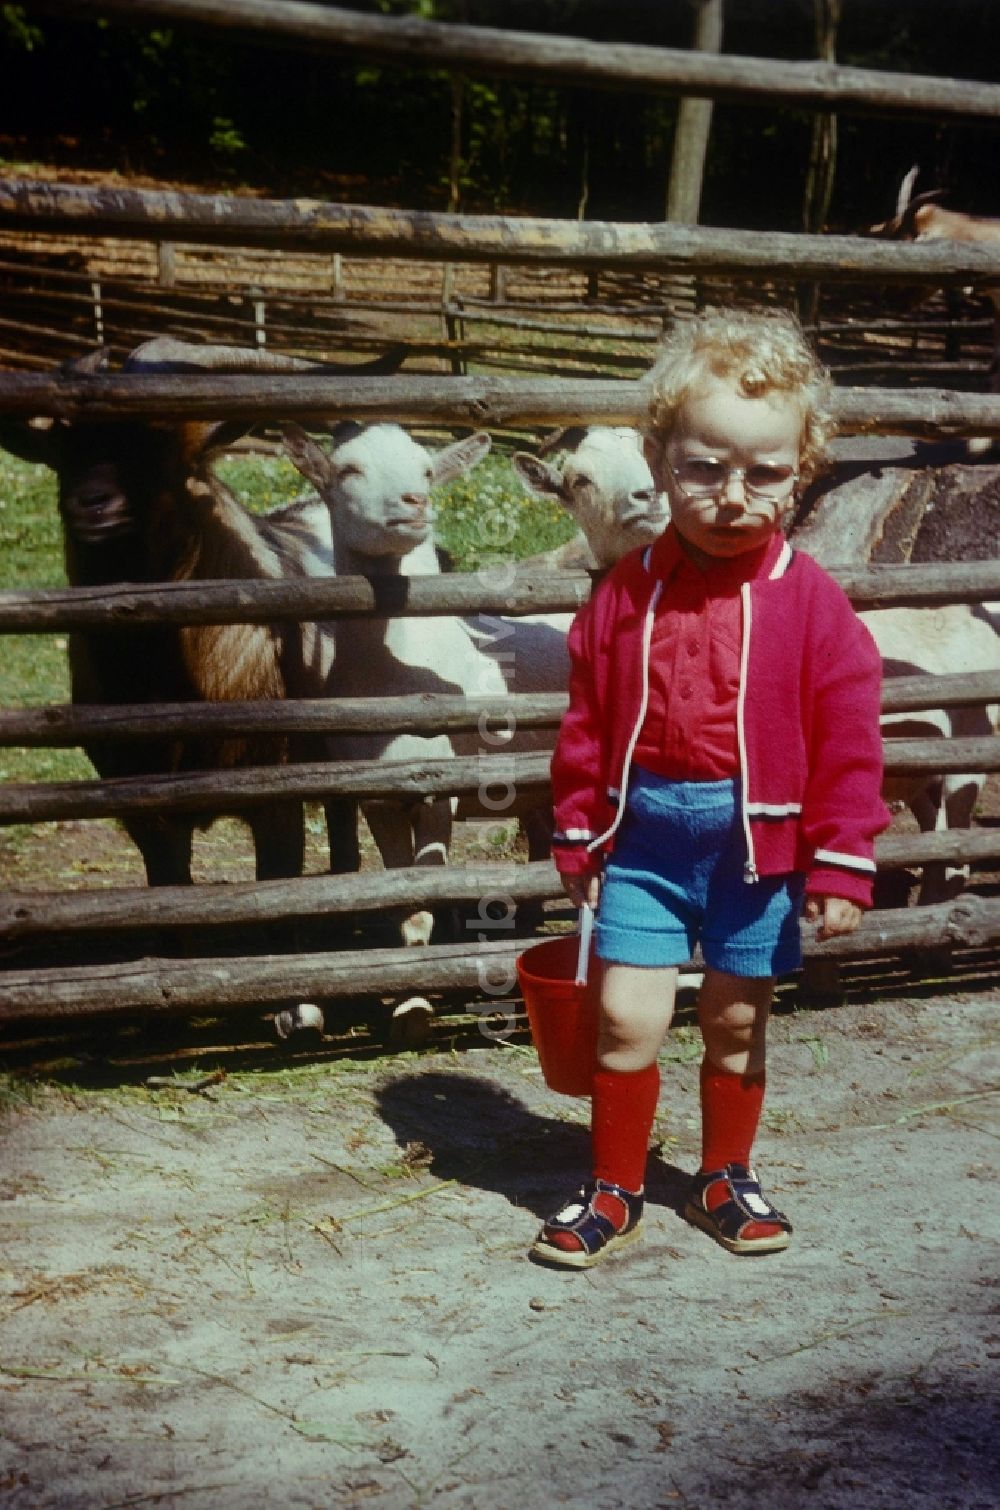 DDR-Fotoarchiv: Neustrelitz - Kleines Kind mit roten Kniestrümpfen, Locken und einem Buddeleimer im Tierpark in Neustrelitz in Mecklenburg-Vorpommern in der DDR